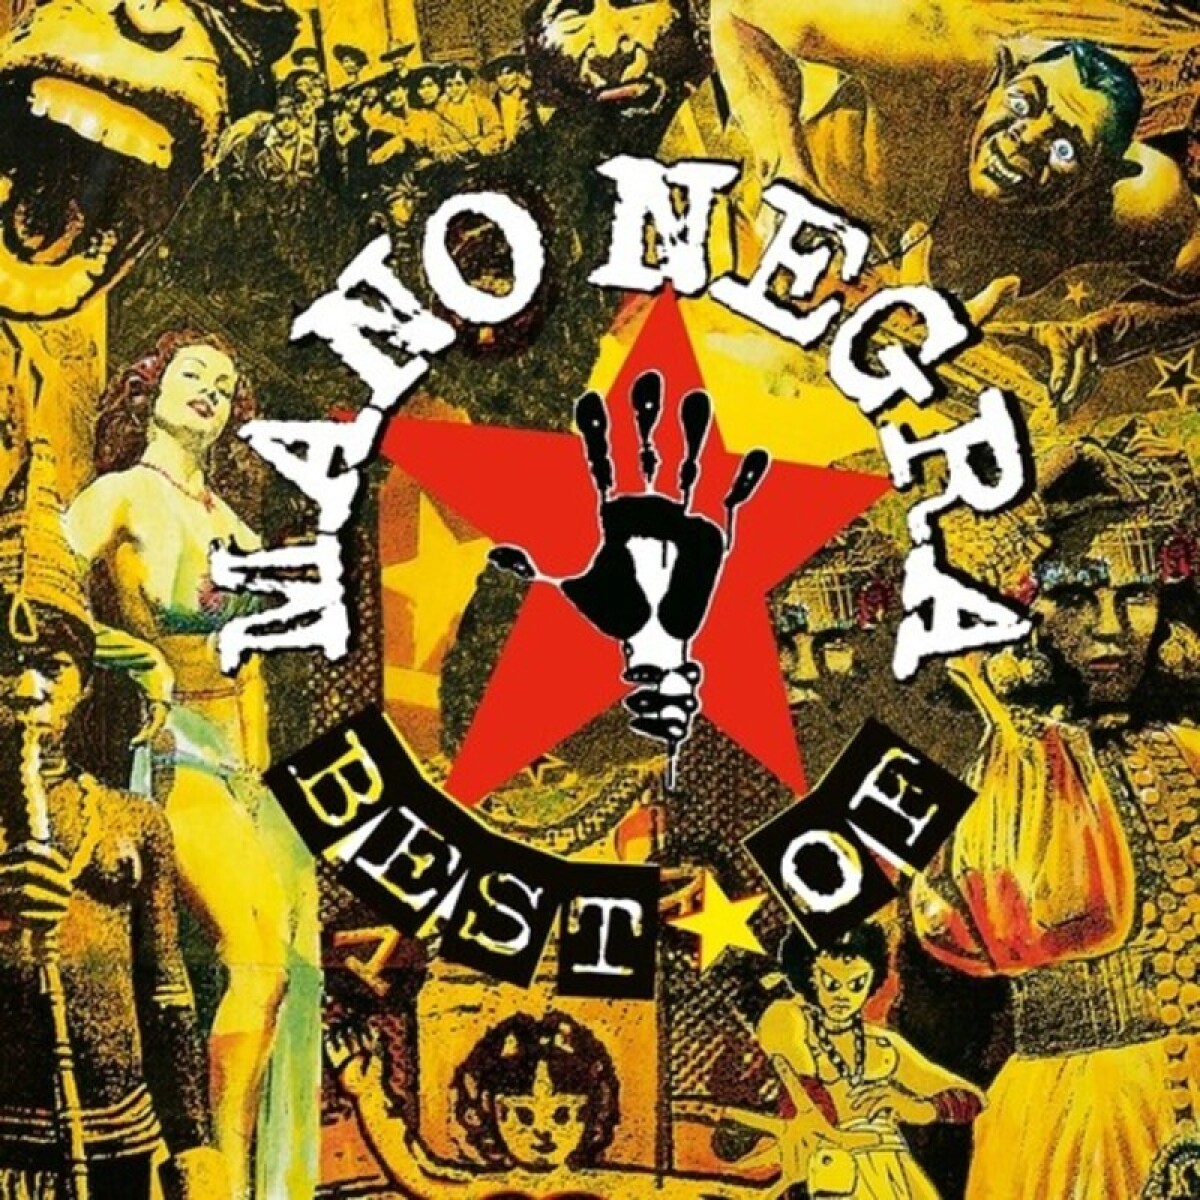 Mano Negra - Best Of Mano Negra 